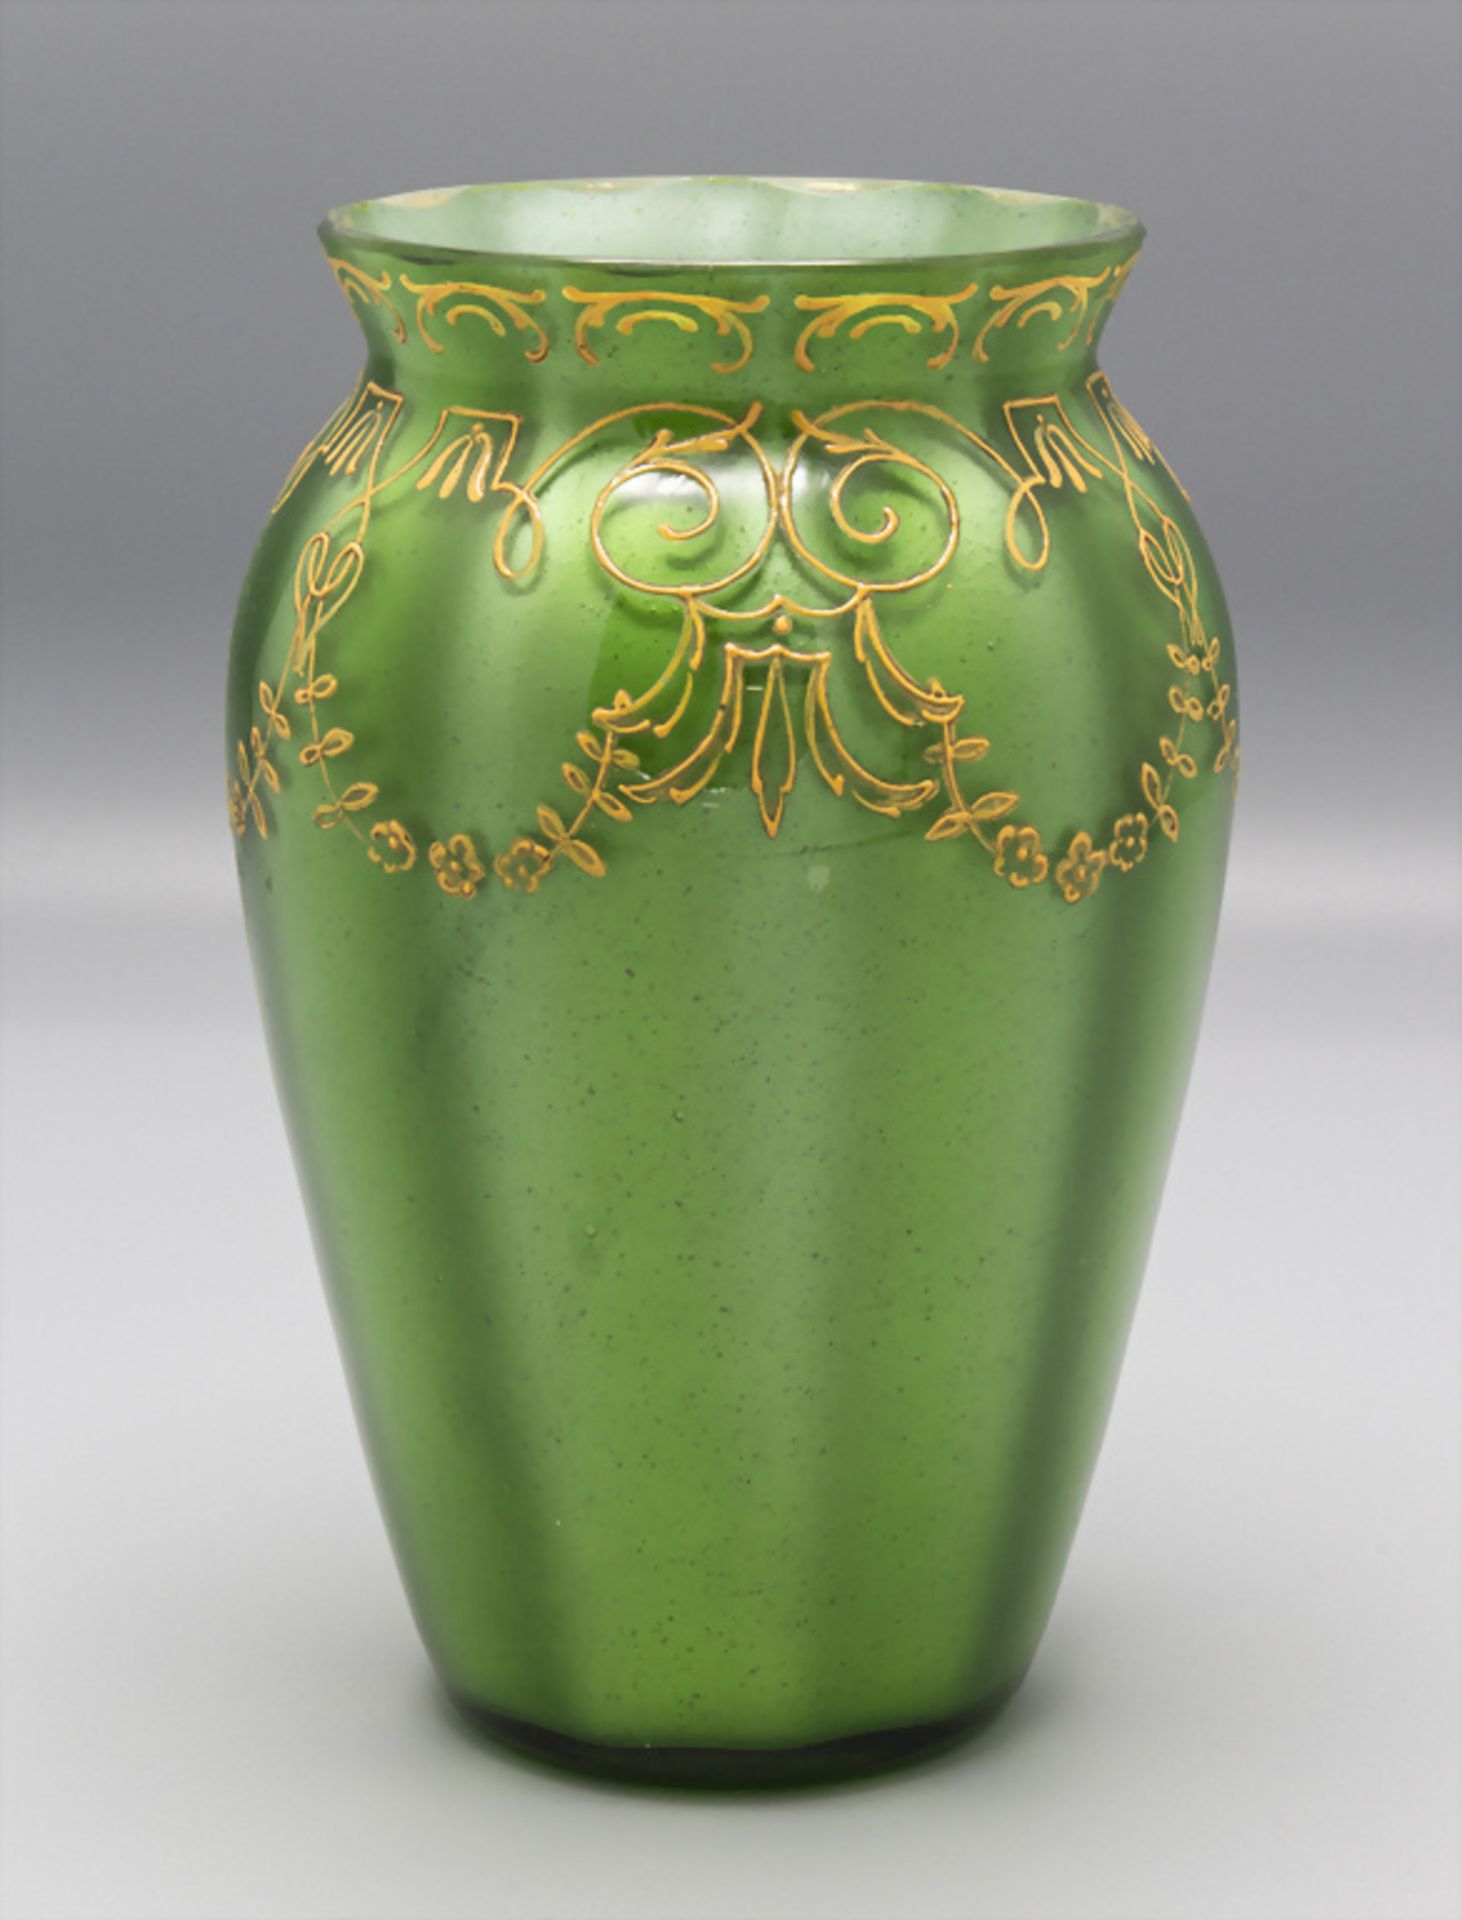 Jugendstil Glasvase / An Art Nouveau glass vase, Loetz Wwe., Klostermühle, um 1905 - Image 4 of 7